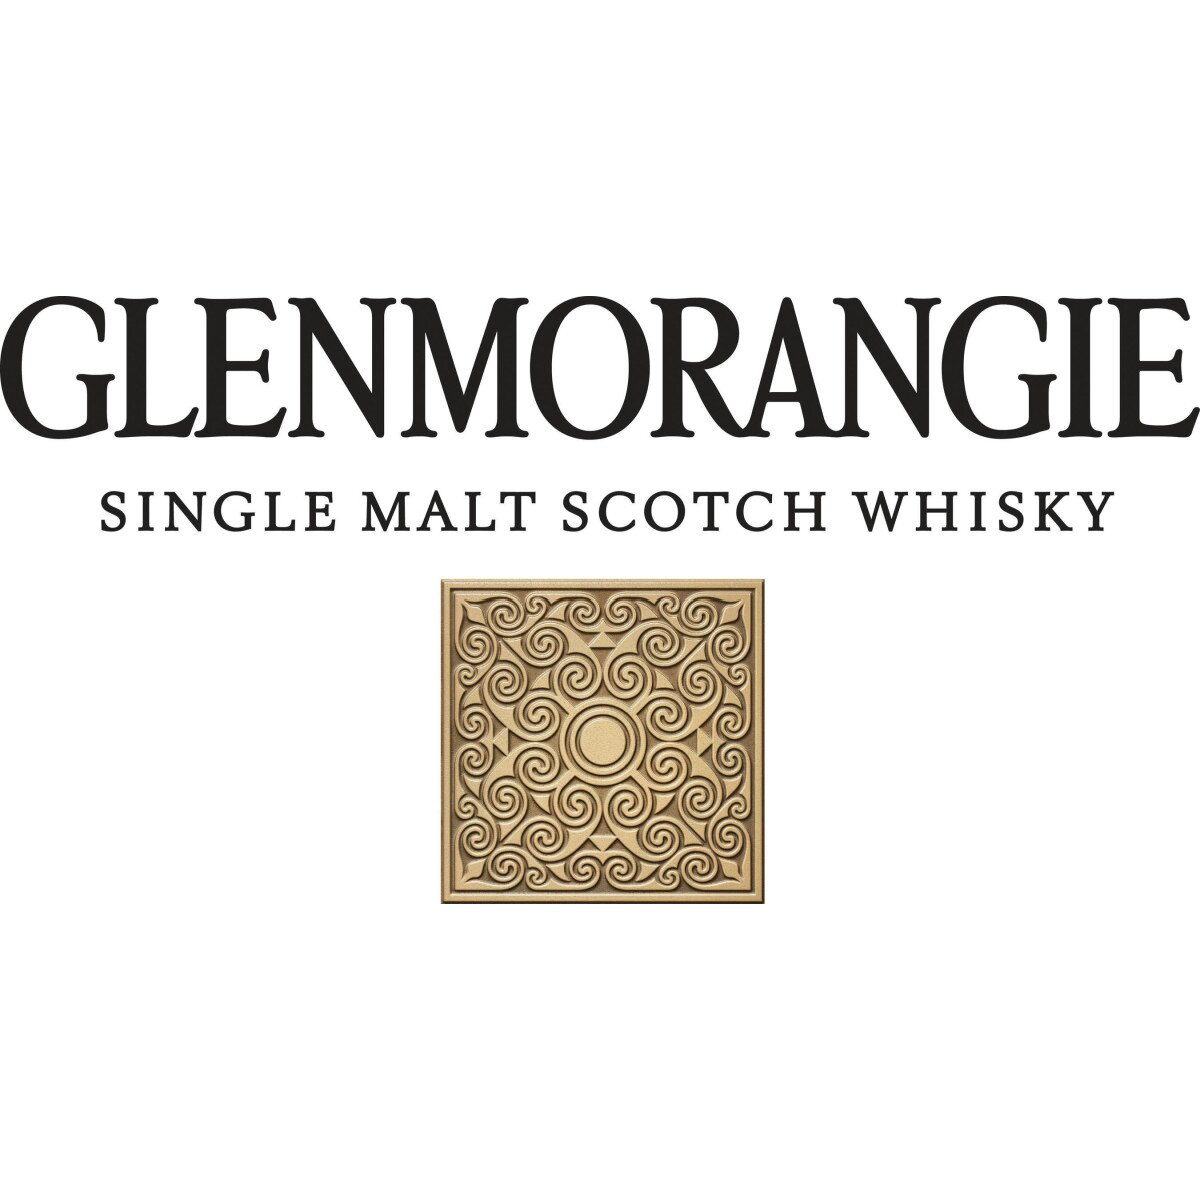 glenmorangie-logo-10082013-1yhigh113929127932051.jpg